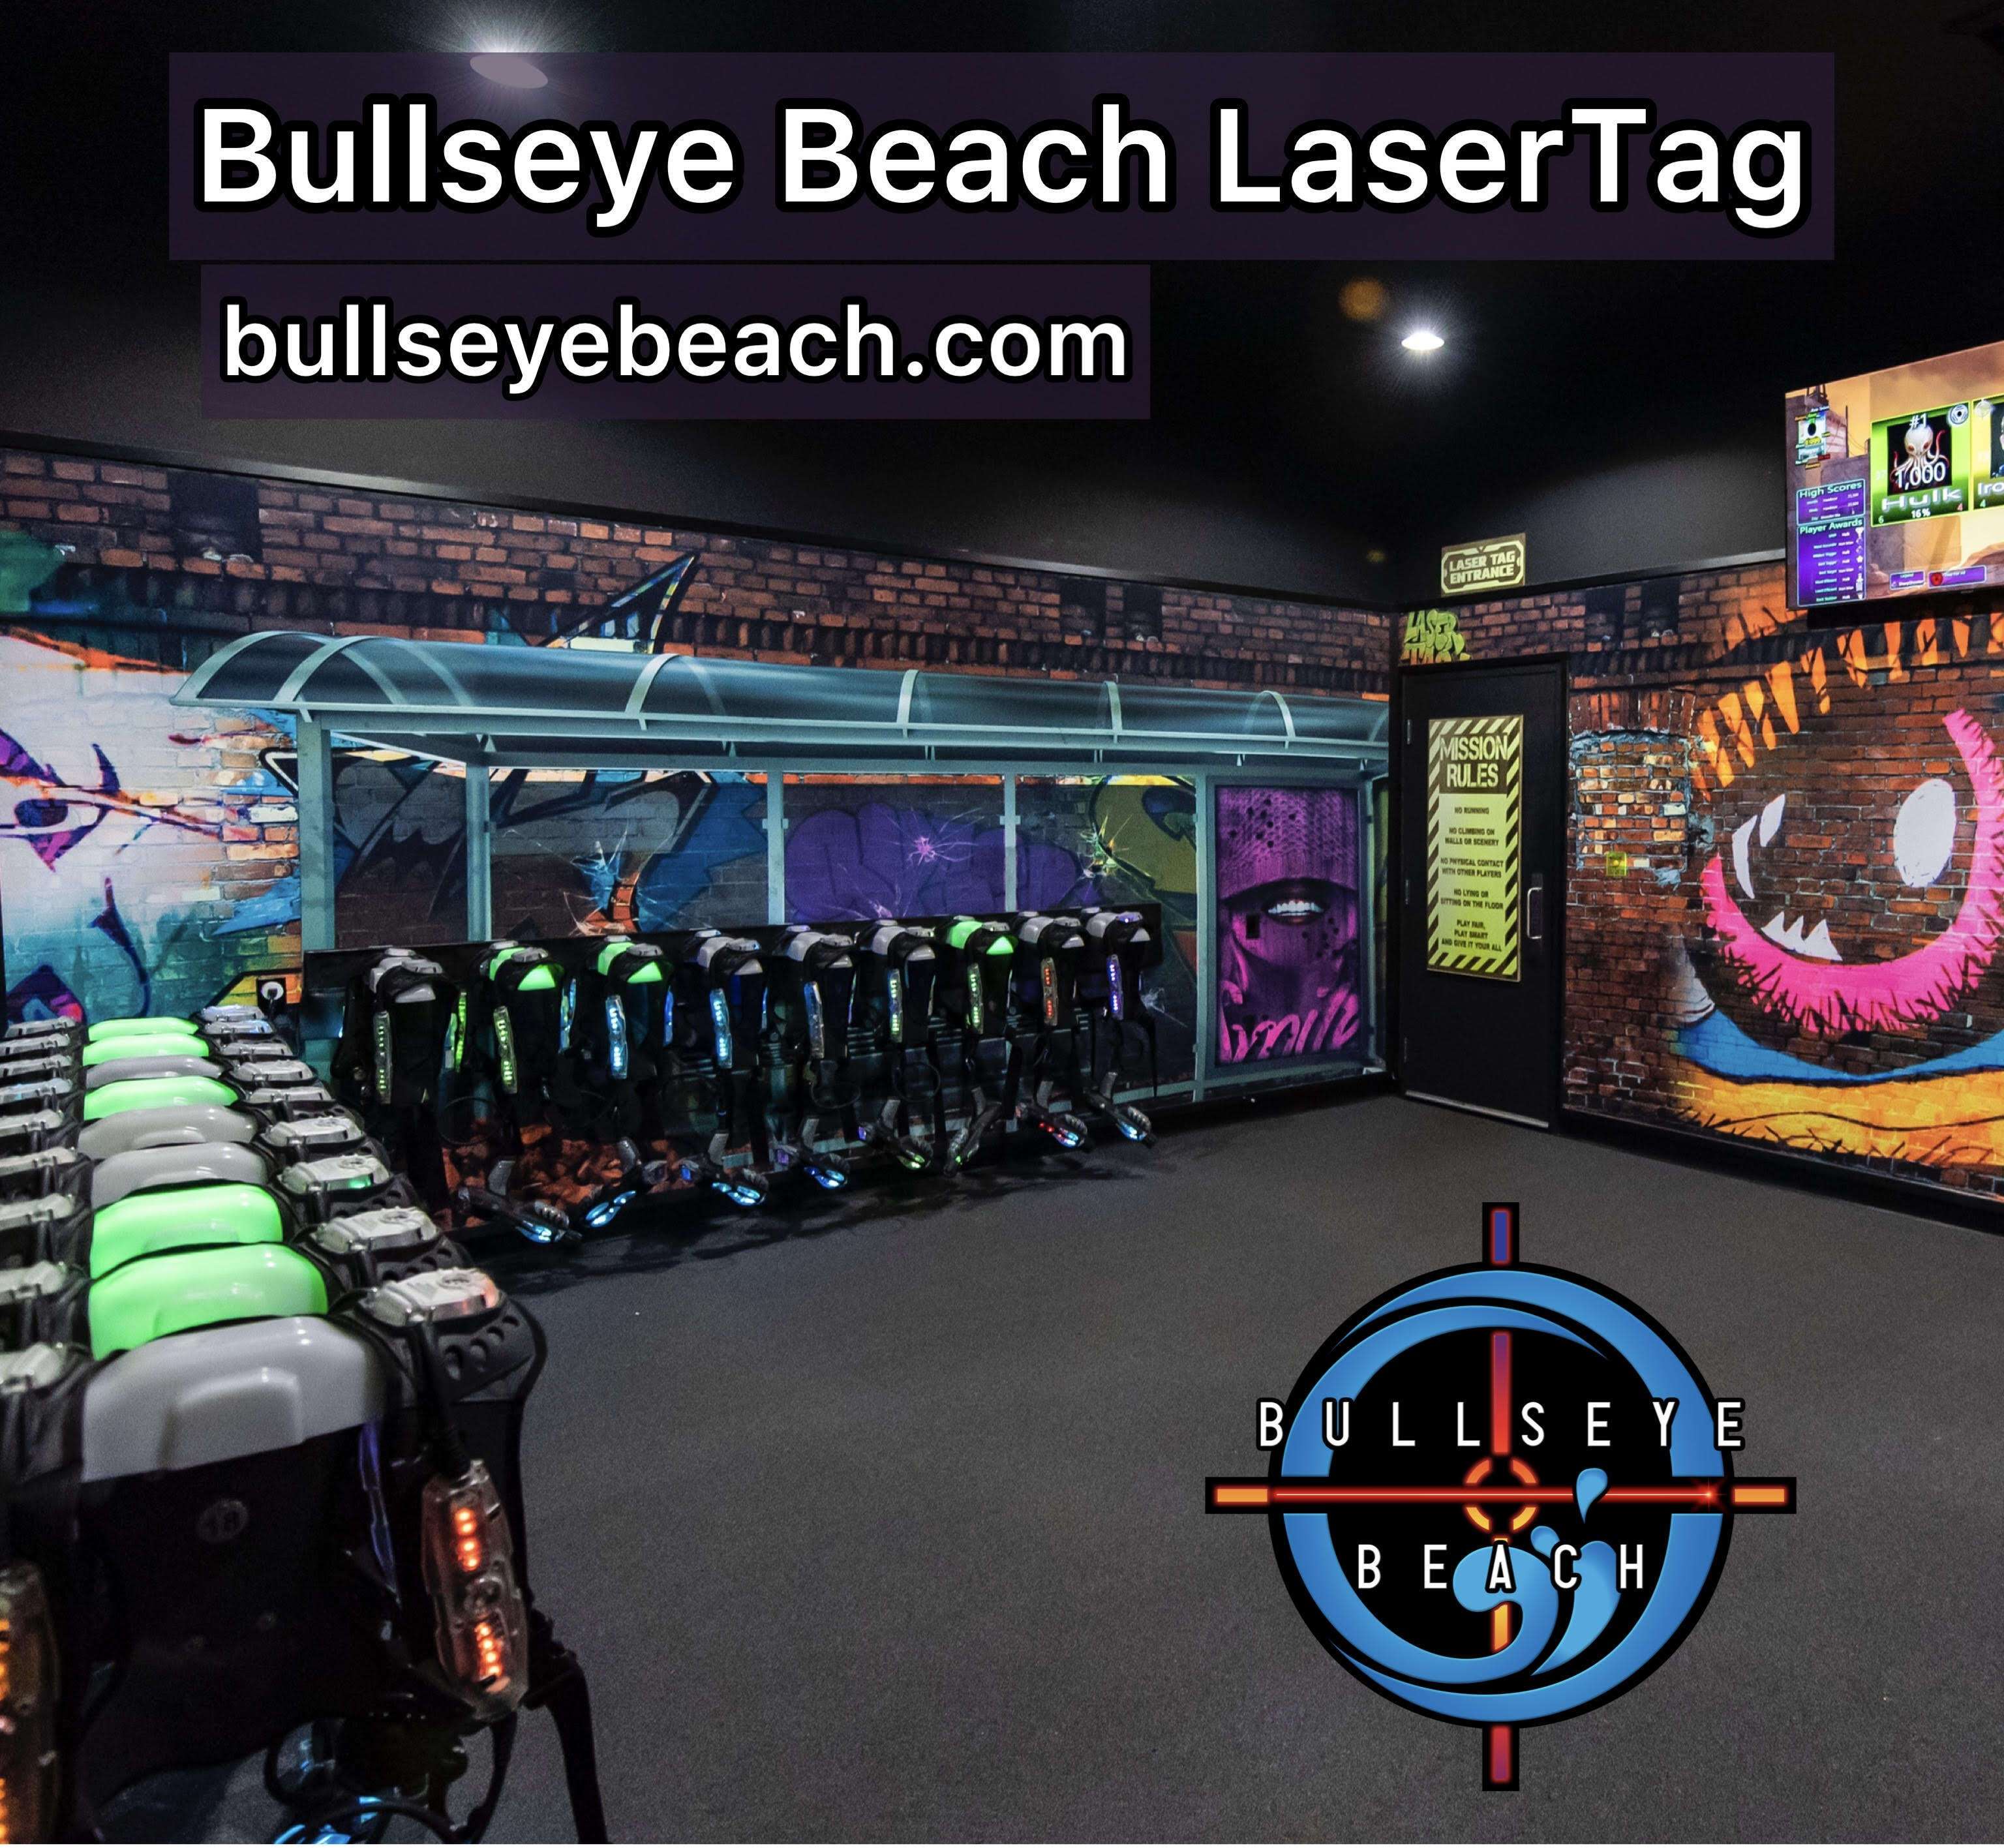 Bullseye Beach LaserTag